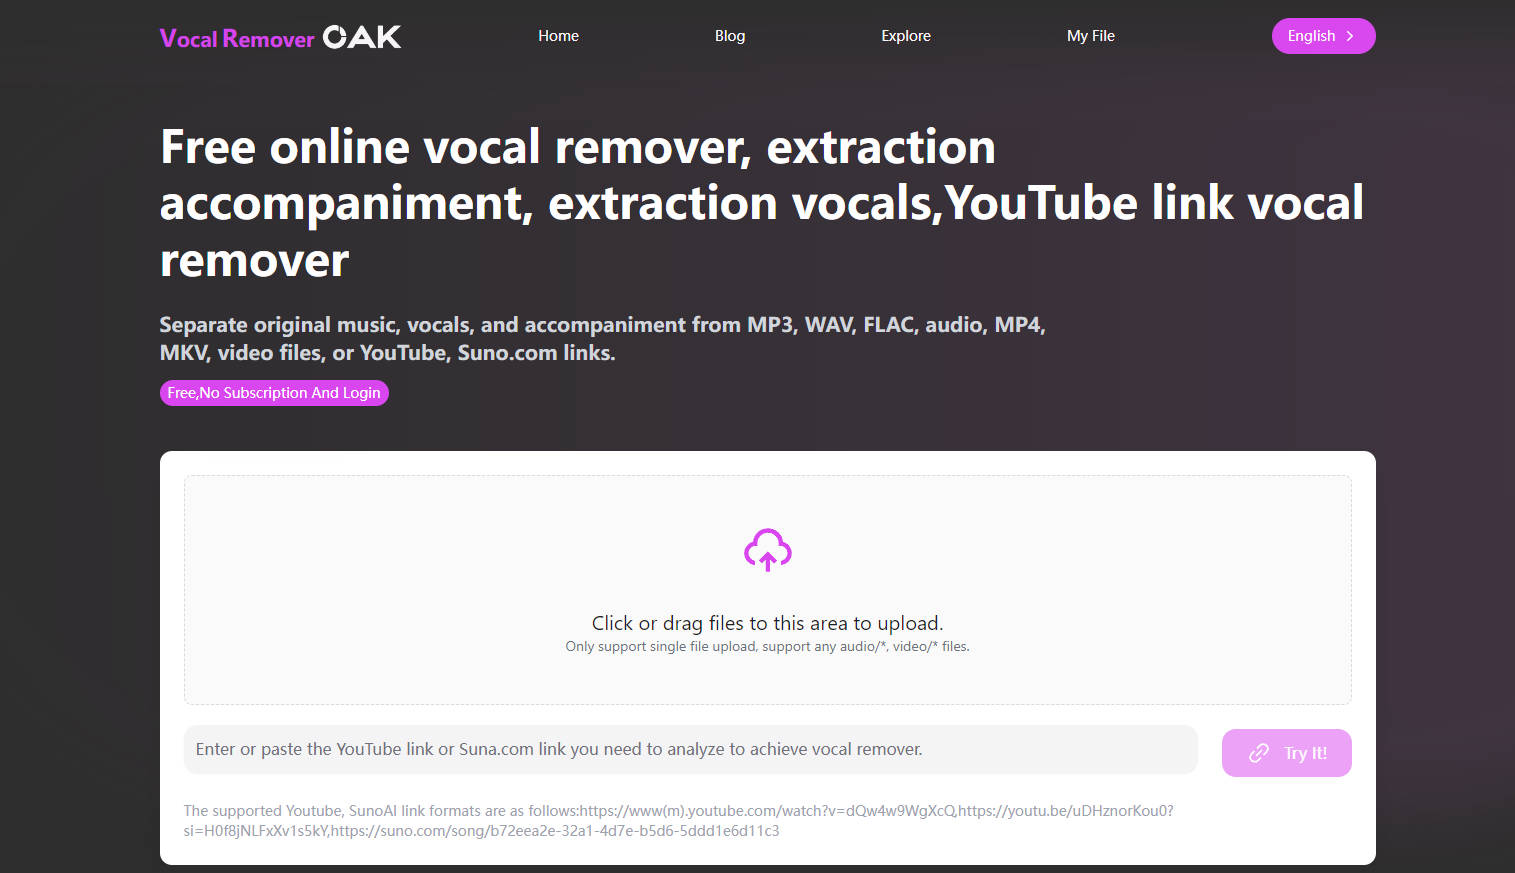 
Vocal Remover Oak
